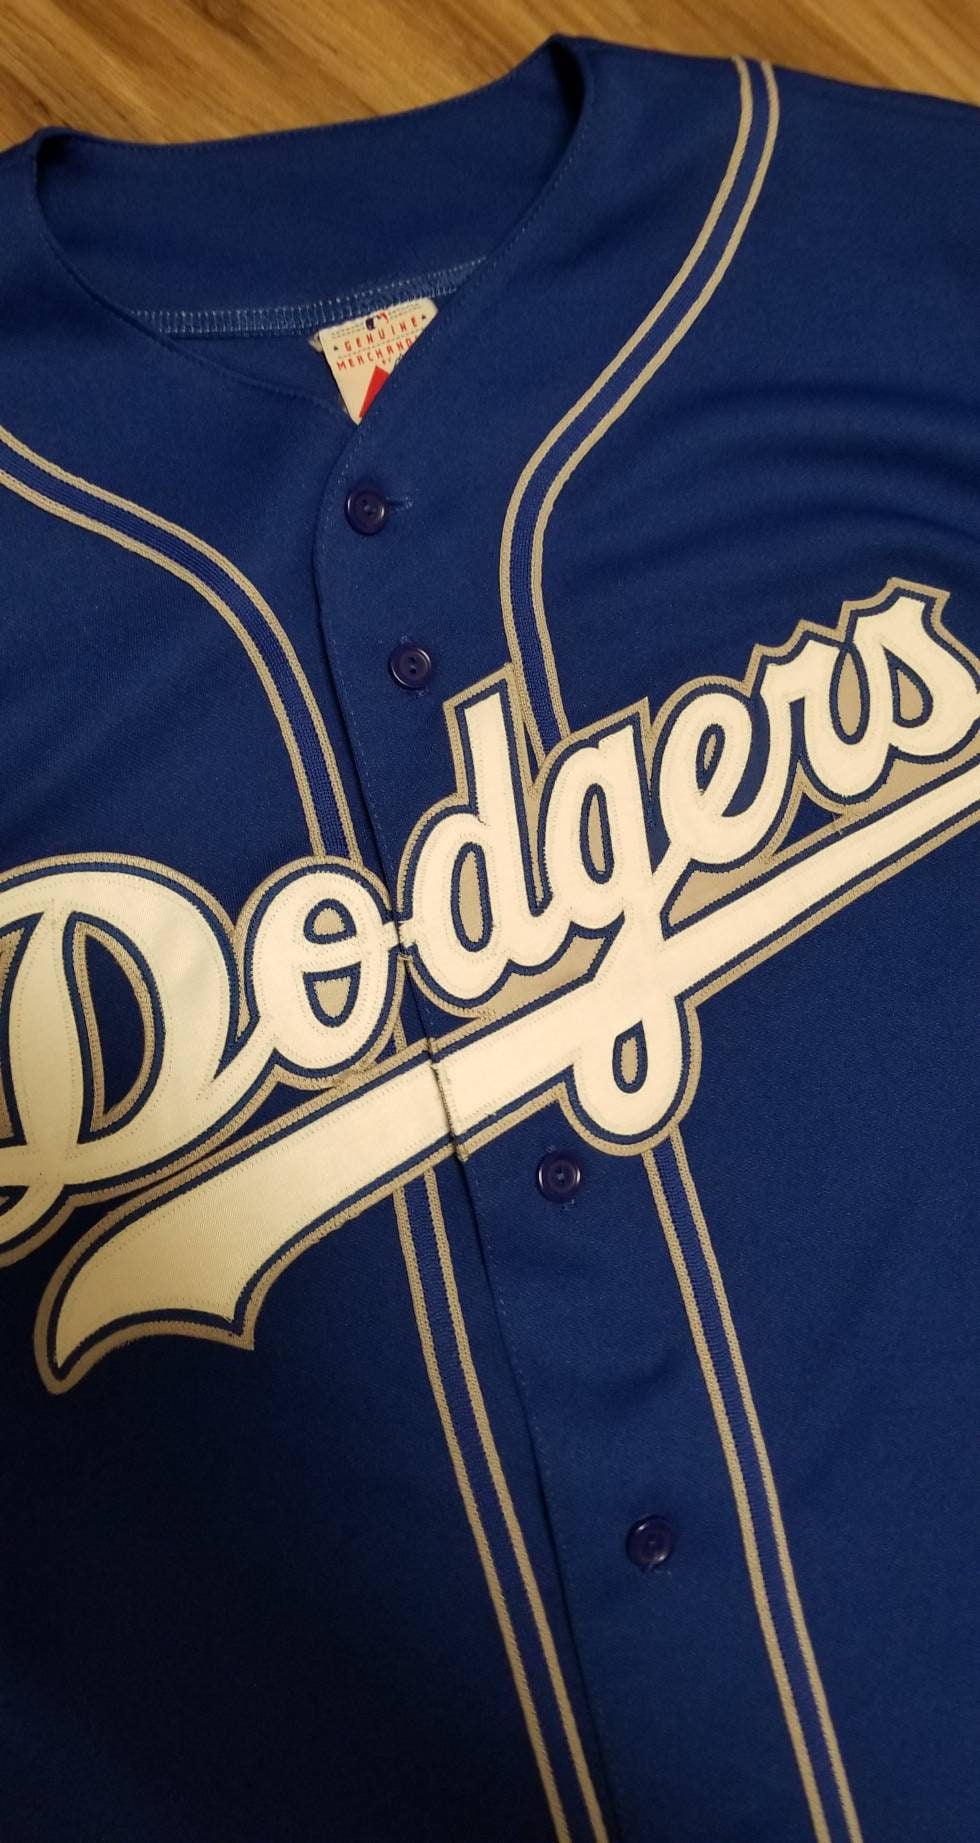 1999-2000 XL Dodgers Jersey,vintage Dodgers Jersey,90s LA Dodgers